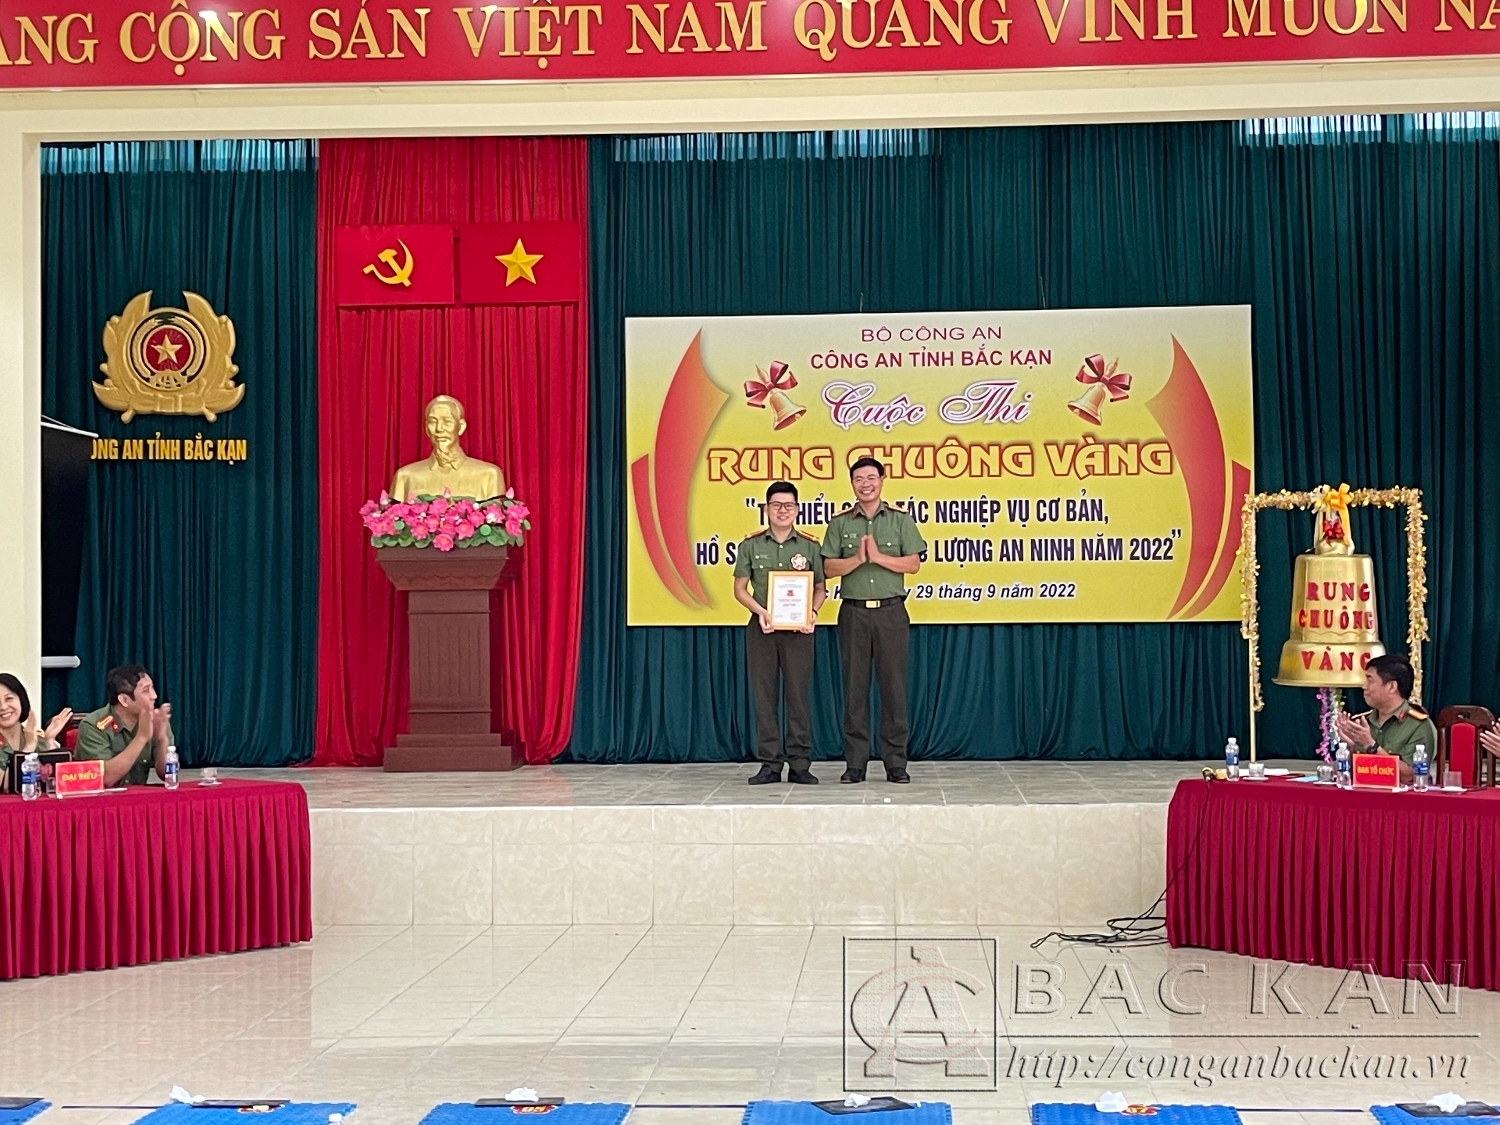 ?ai ta Vu Van Quan Pho Giam đốc Công an tỉnh, Truong Ban To chuc Cuoc th i trao giai Nhi cho thí sinh Mã Hoàng Huy